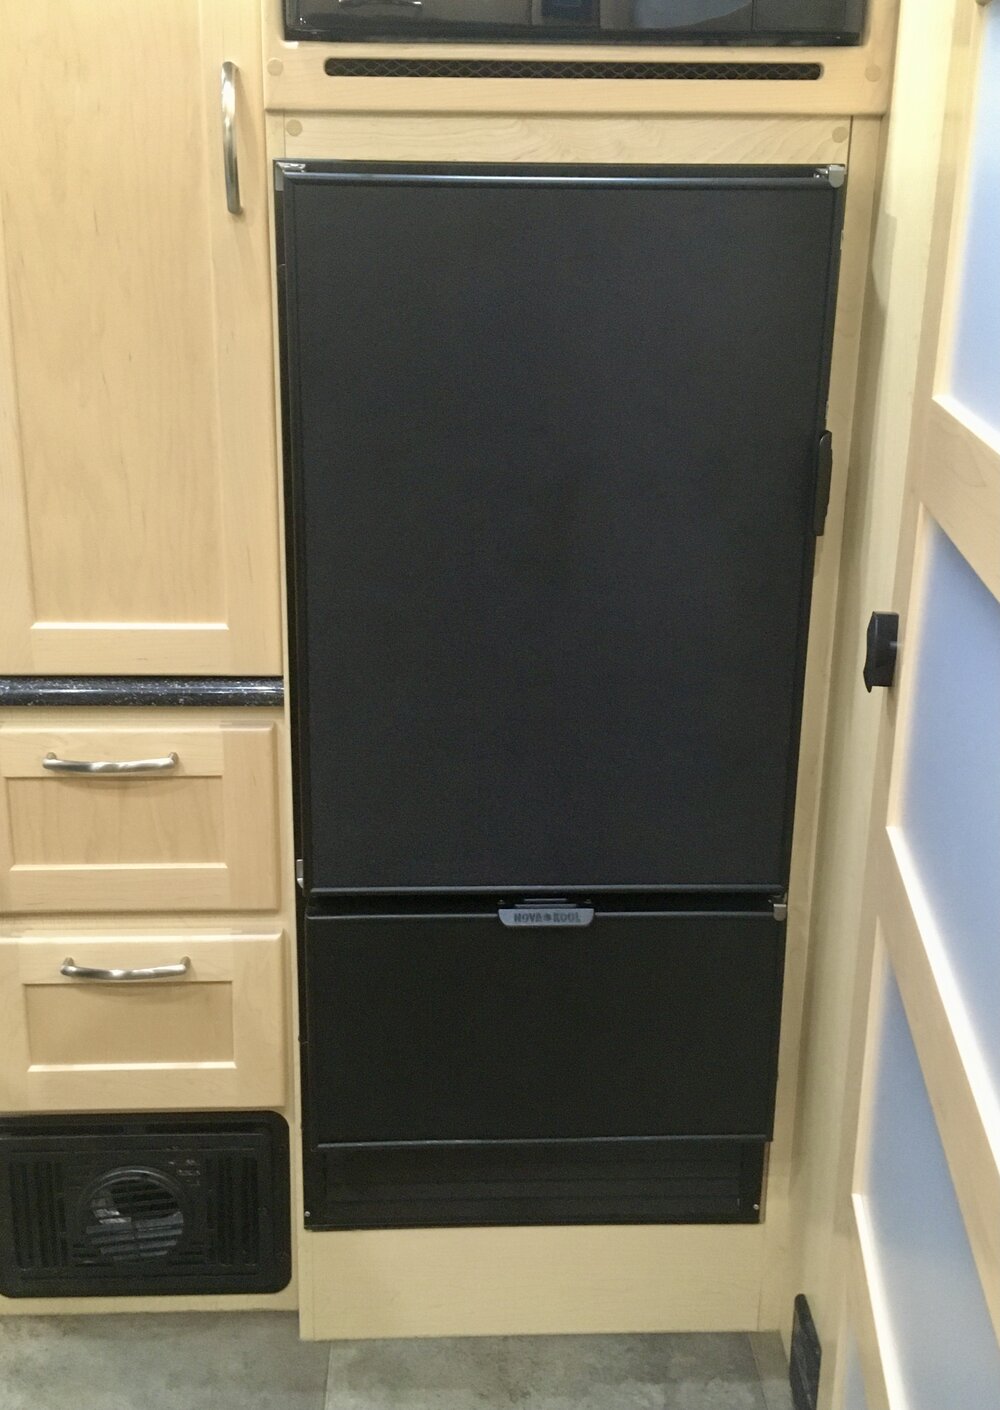 Our Enormous RV Refrigerator Swap – the Nova Kool RFU 7300